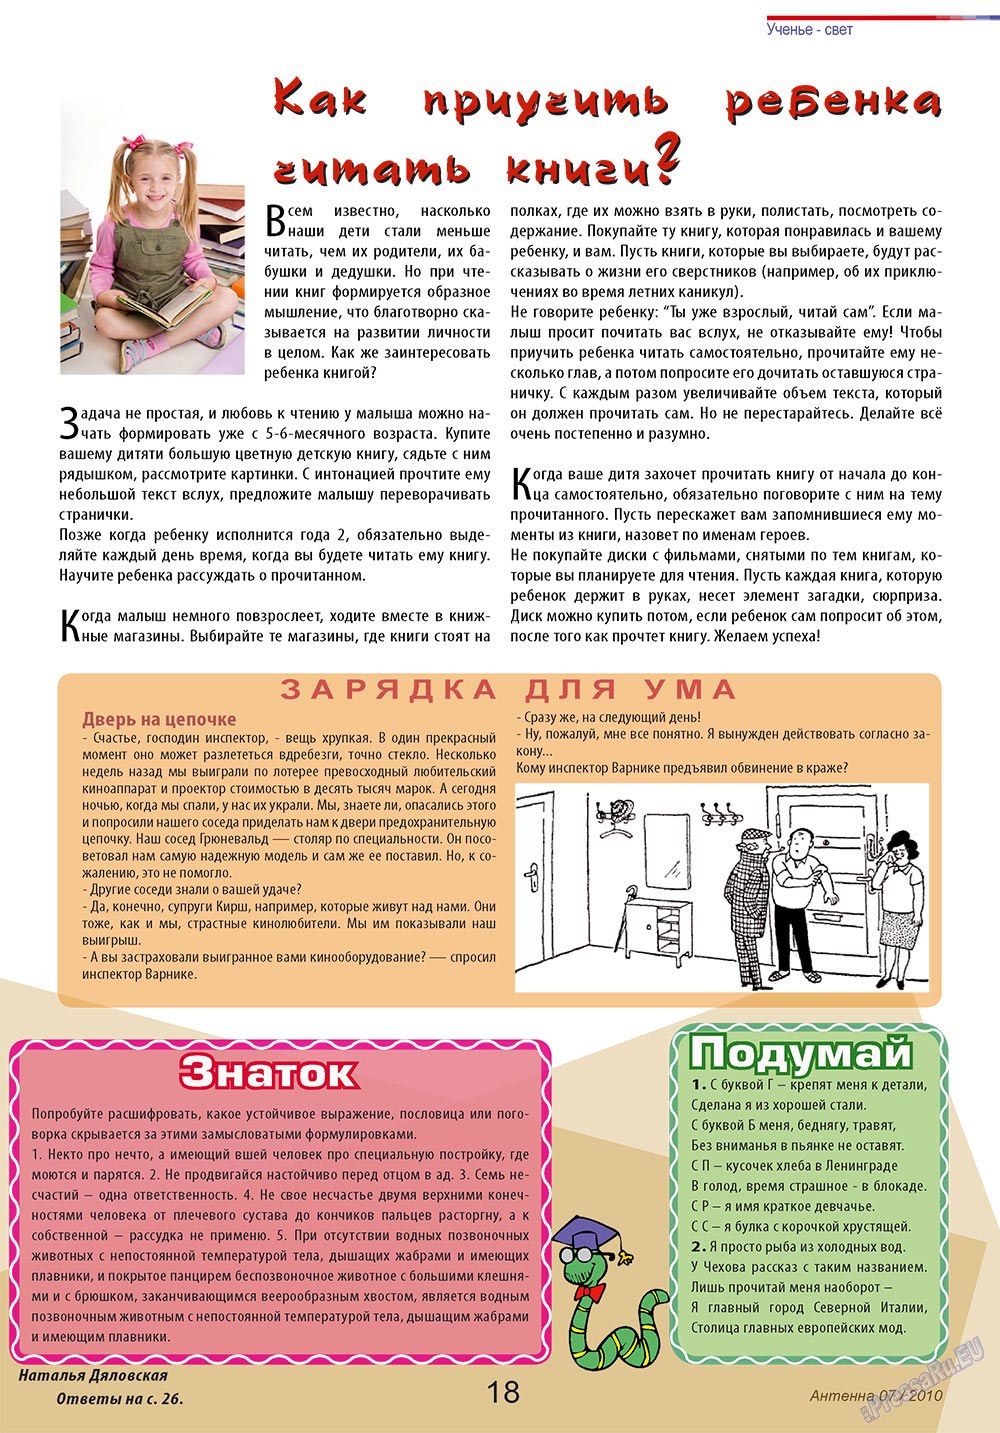 Антенна, журнал. 2010 №7 стр.18